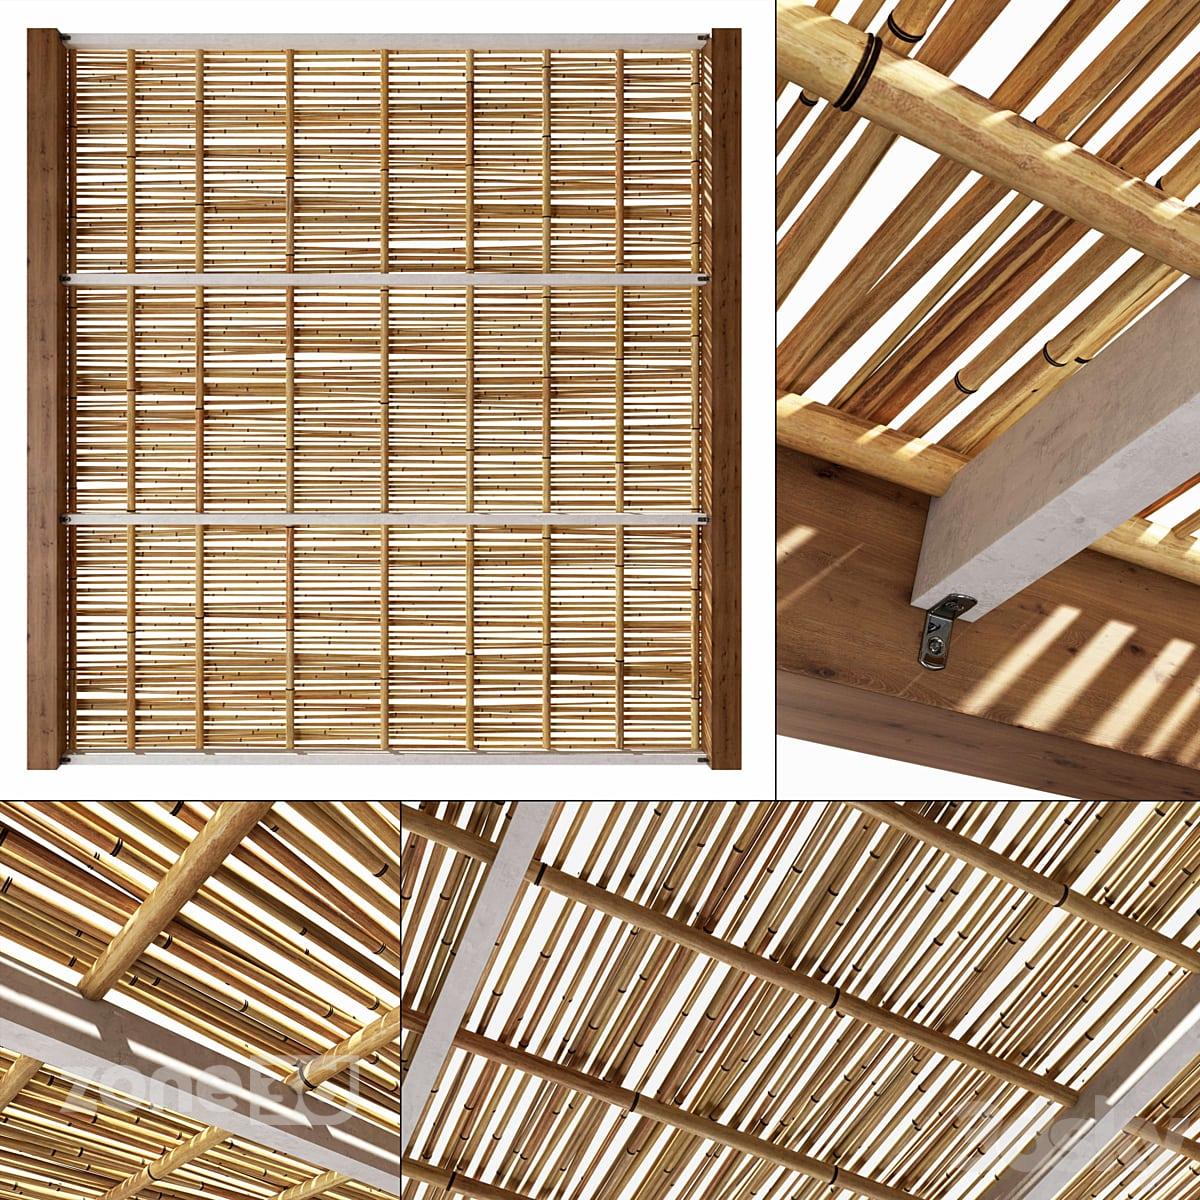 آبجکت پانل شاخه های خشک بامبو با فریم چوبی برای سقف با تیر بتنی